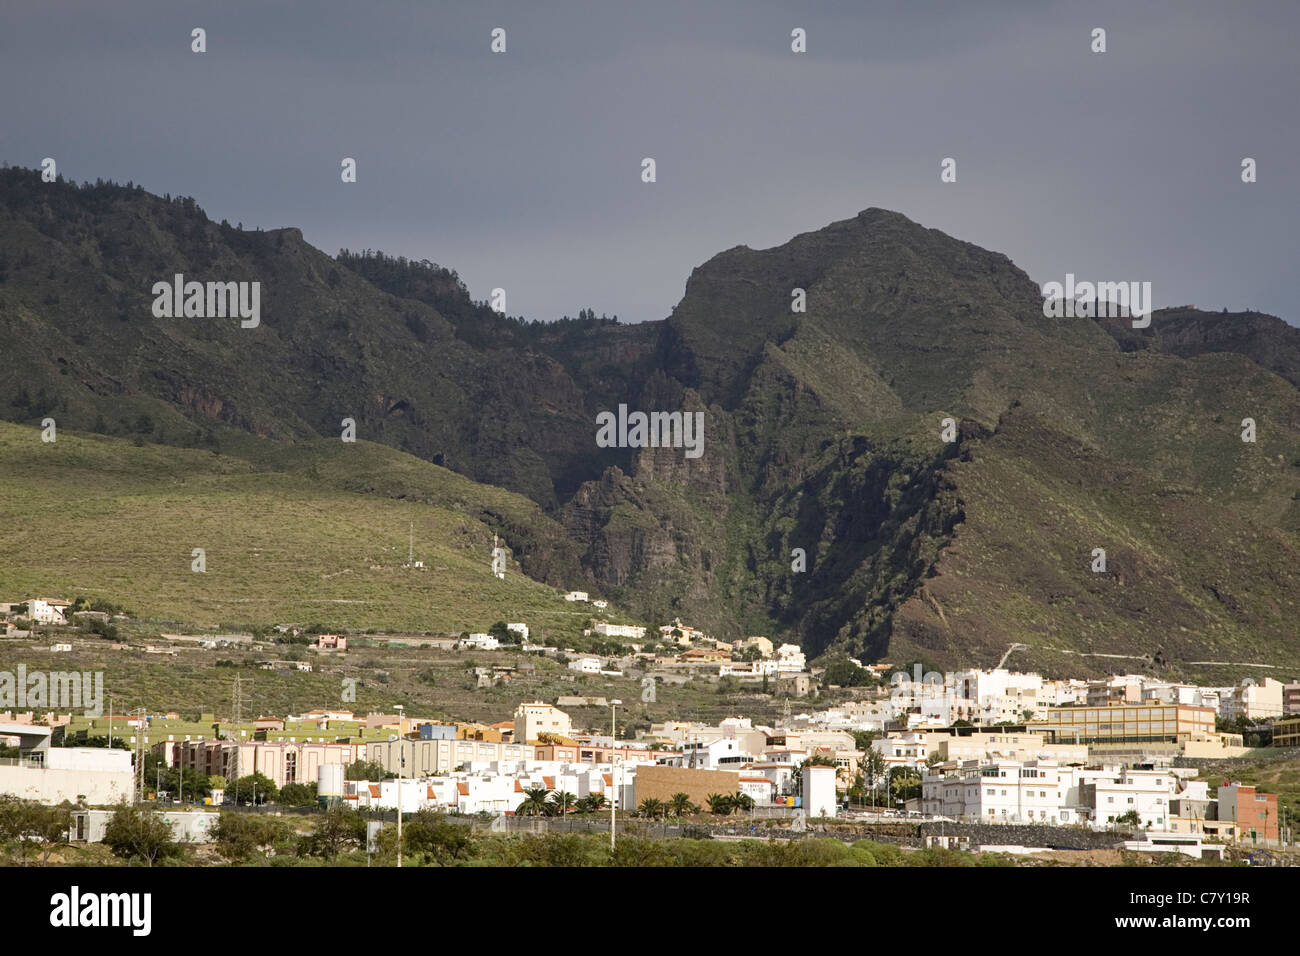 La ciudad de Adeje y tras ella el Barranco del Infierno (Barranco del Infierno), Tenerife, Islas Canarias, España Foto de stock